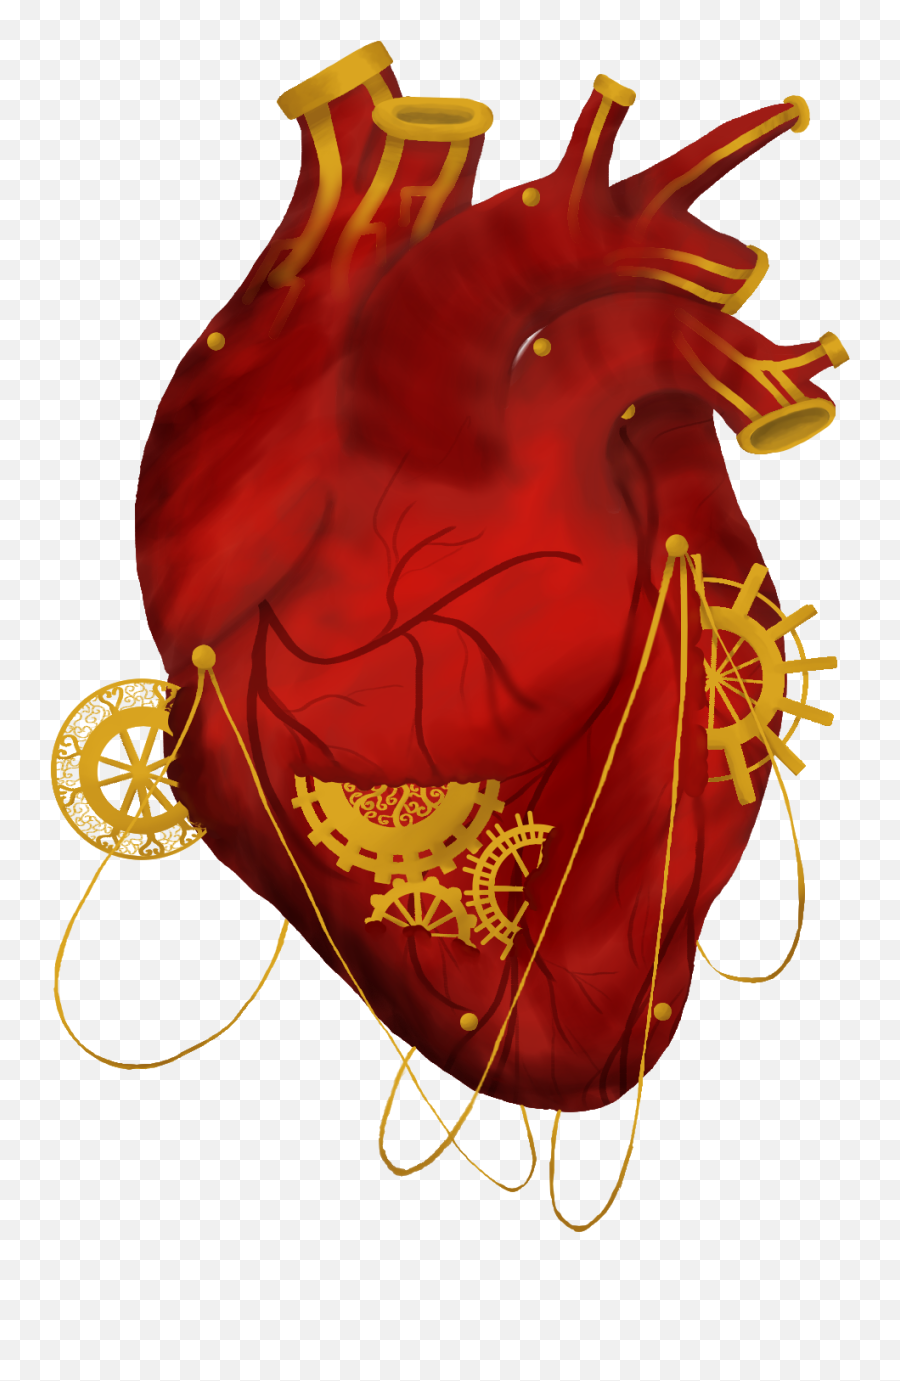 Howaito Emoji,Heart Organ Clipart